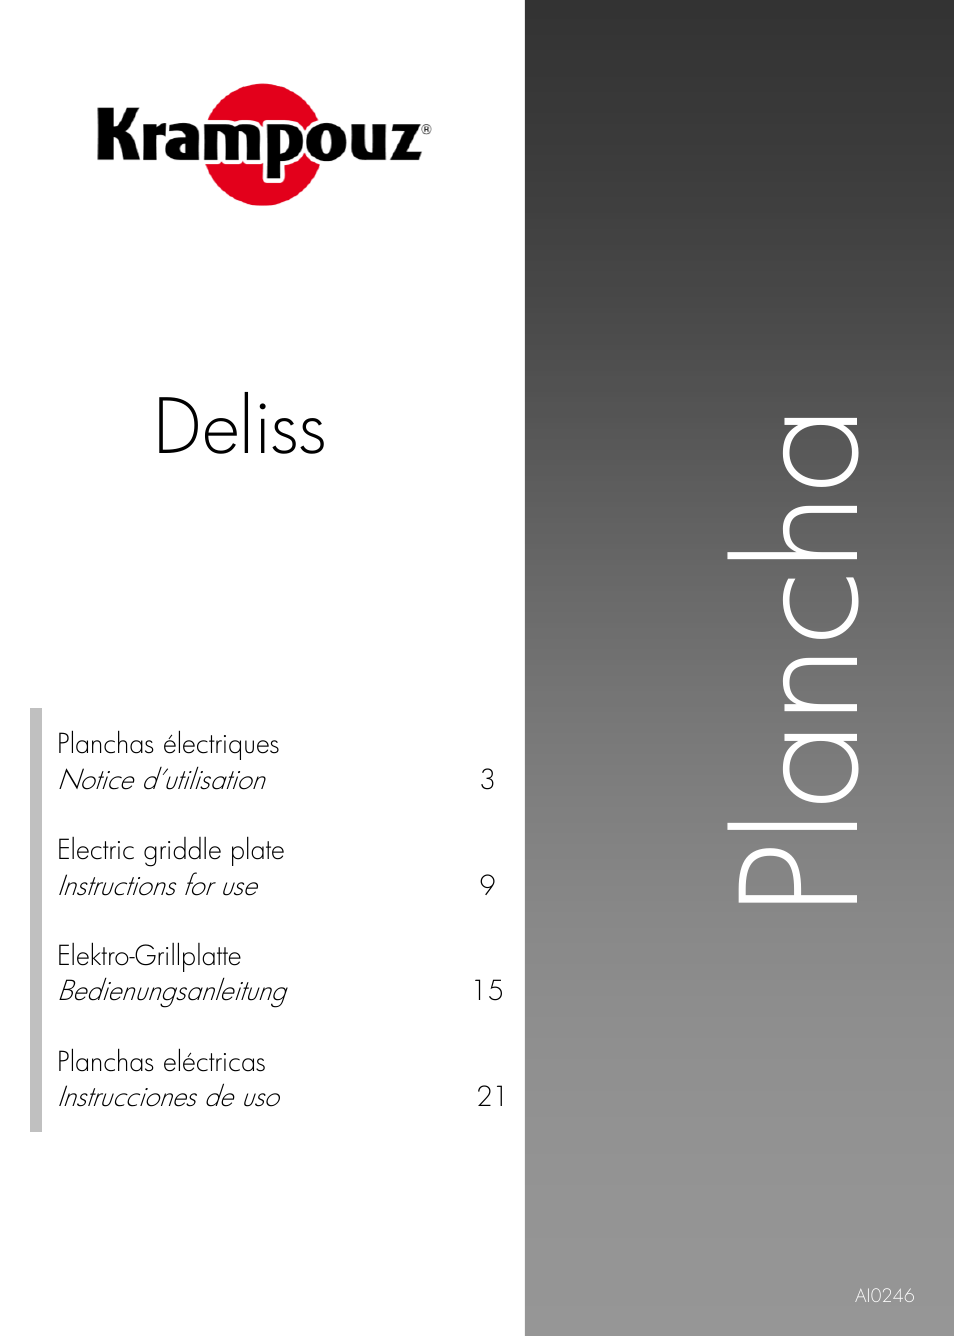 Krampouz Deliss plancha User Manual | 28 pages